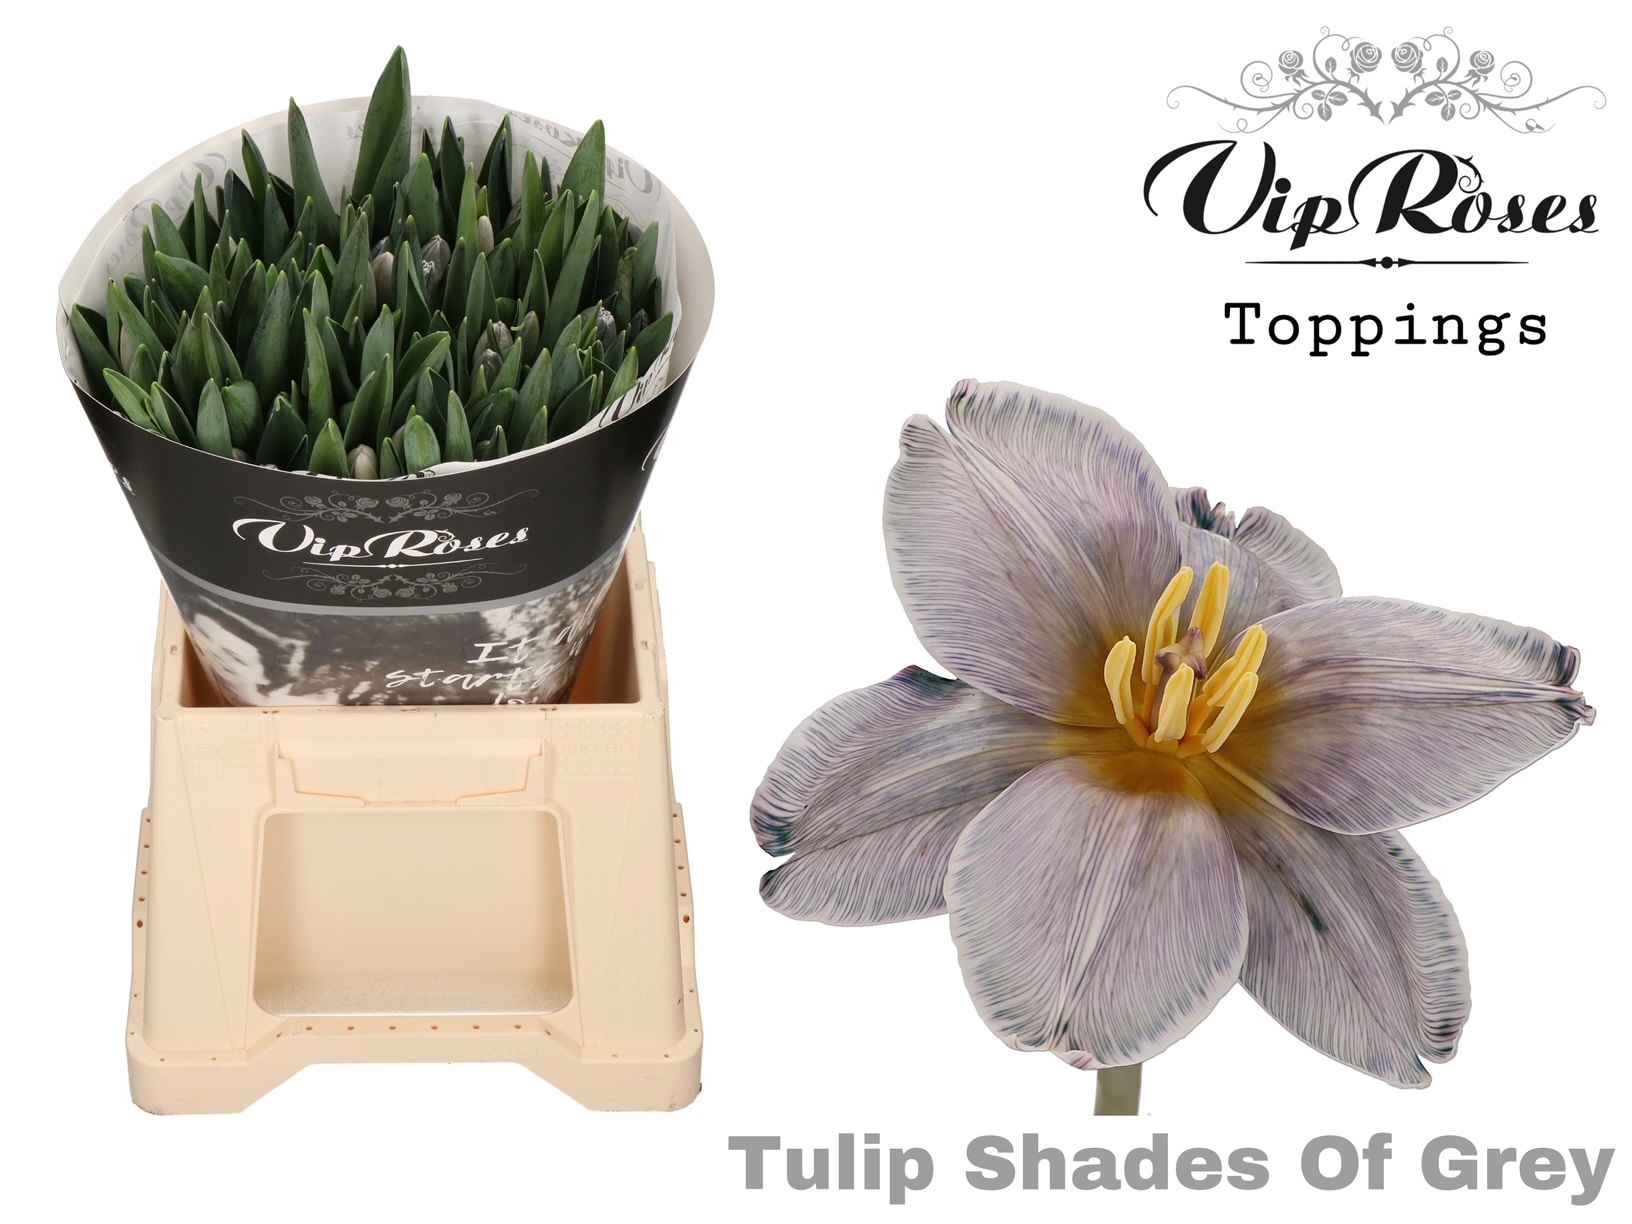 Срезанные цветы оптом Tulipa si paint shades of grey от 50шт из Голландии с доставкой по России